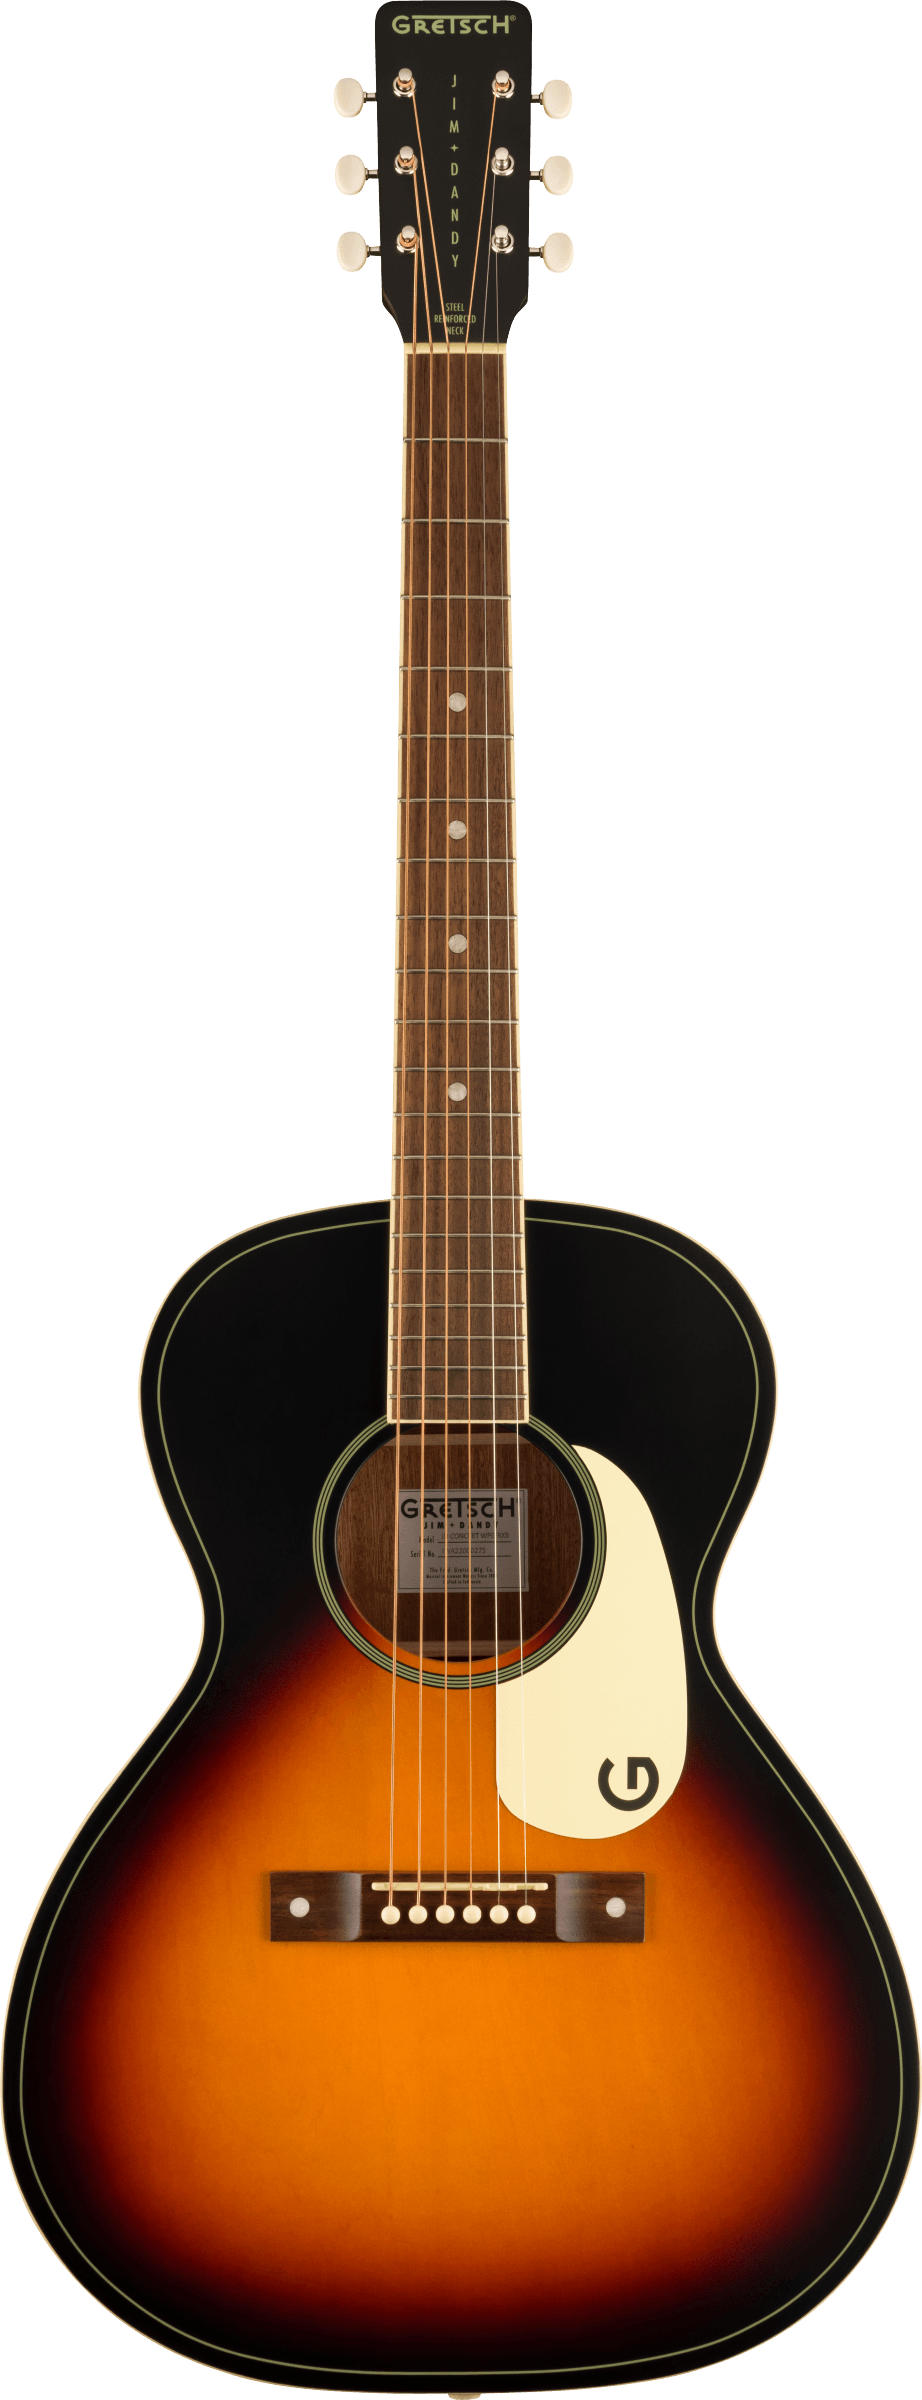 Gretsch Jim Dandy Concert Acoustic Guitar, Walnut Fingerboard, Rex Burst (NEW)